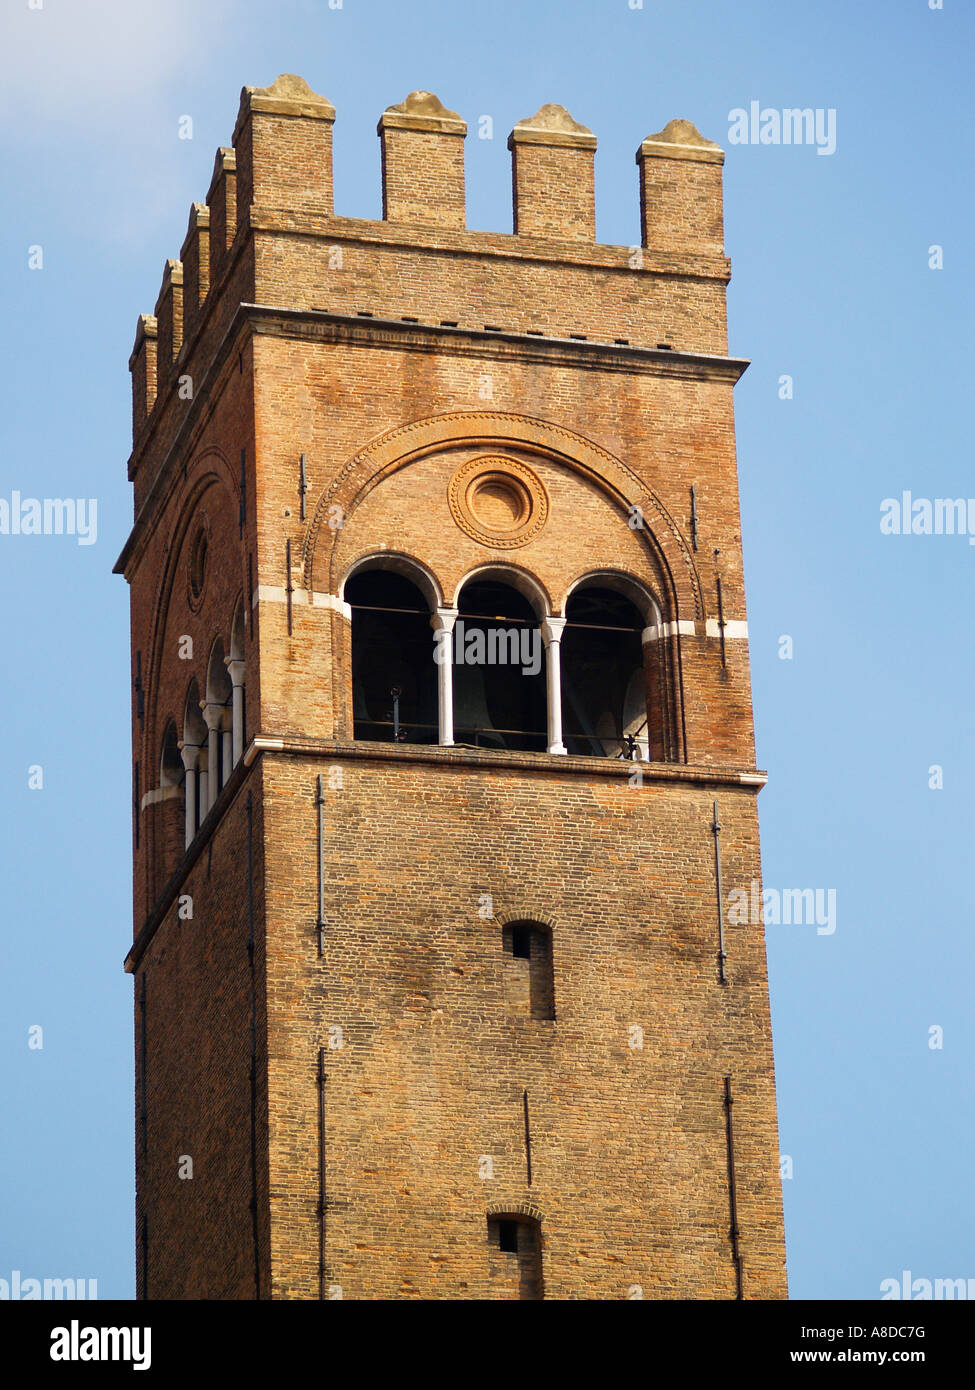 The bell tower of the Palazzo del Podestà Bologna Emilia Romagna Italy Stock Photo